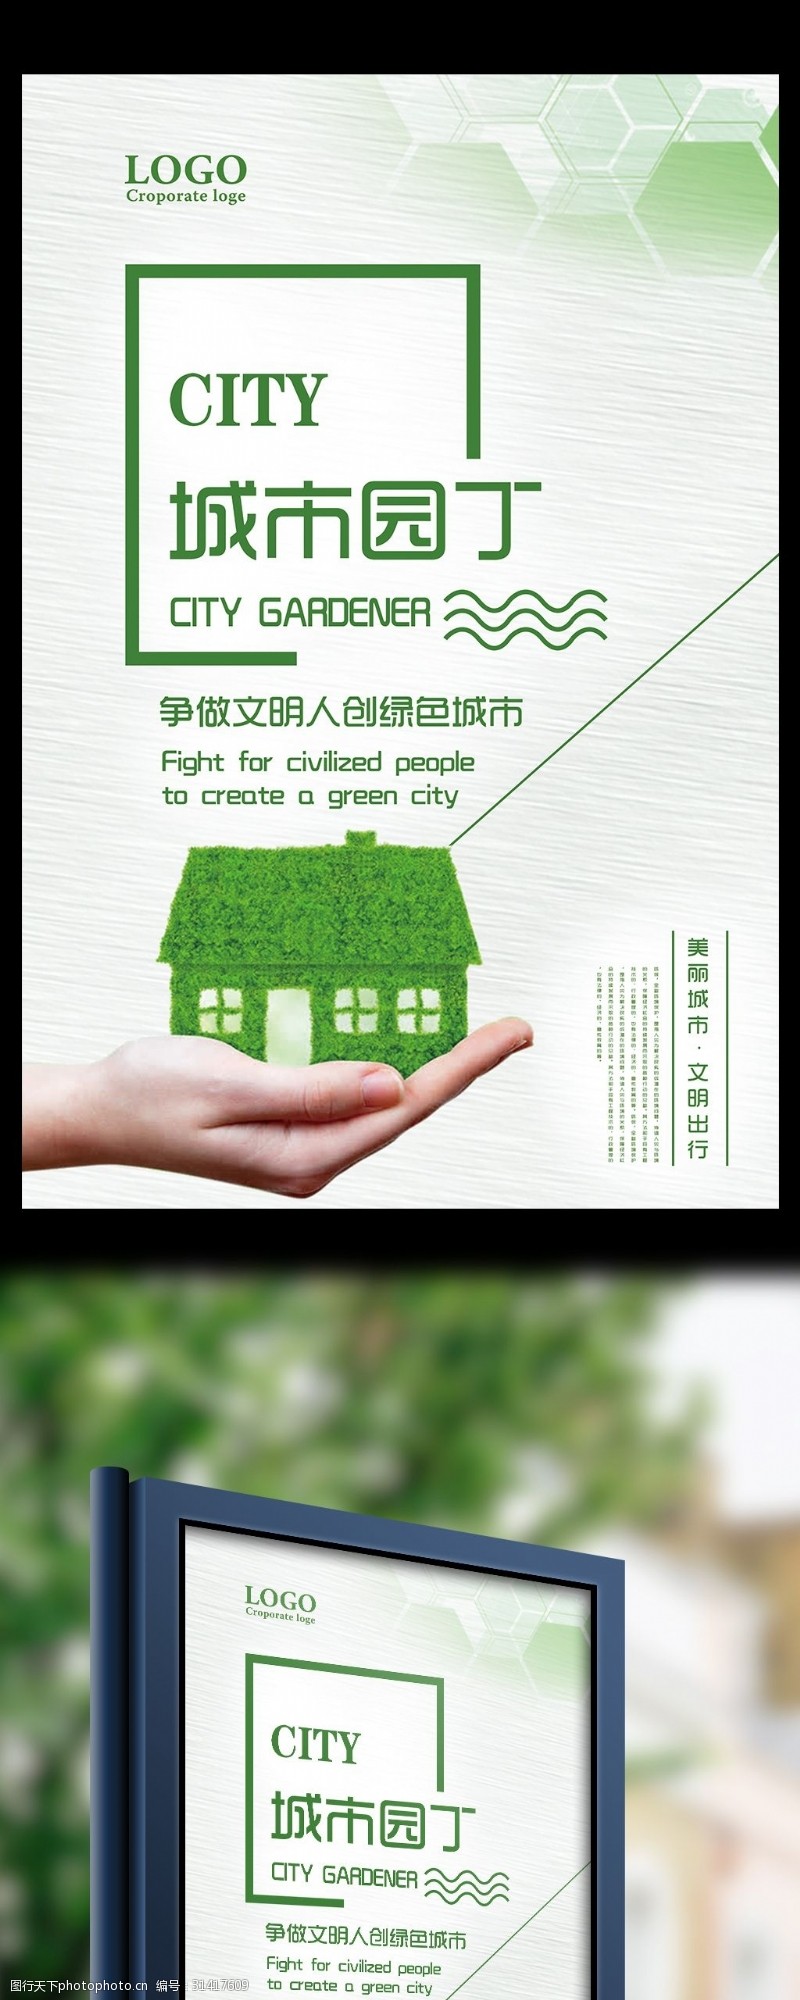 保建城市园丁创文明城市公益宣传海报